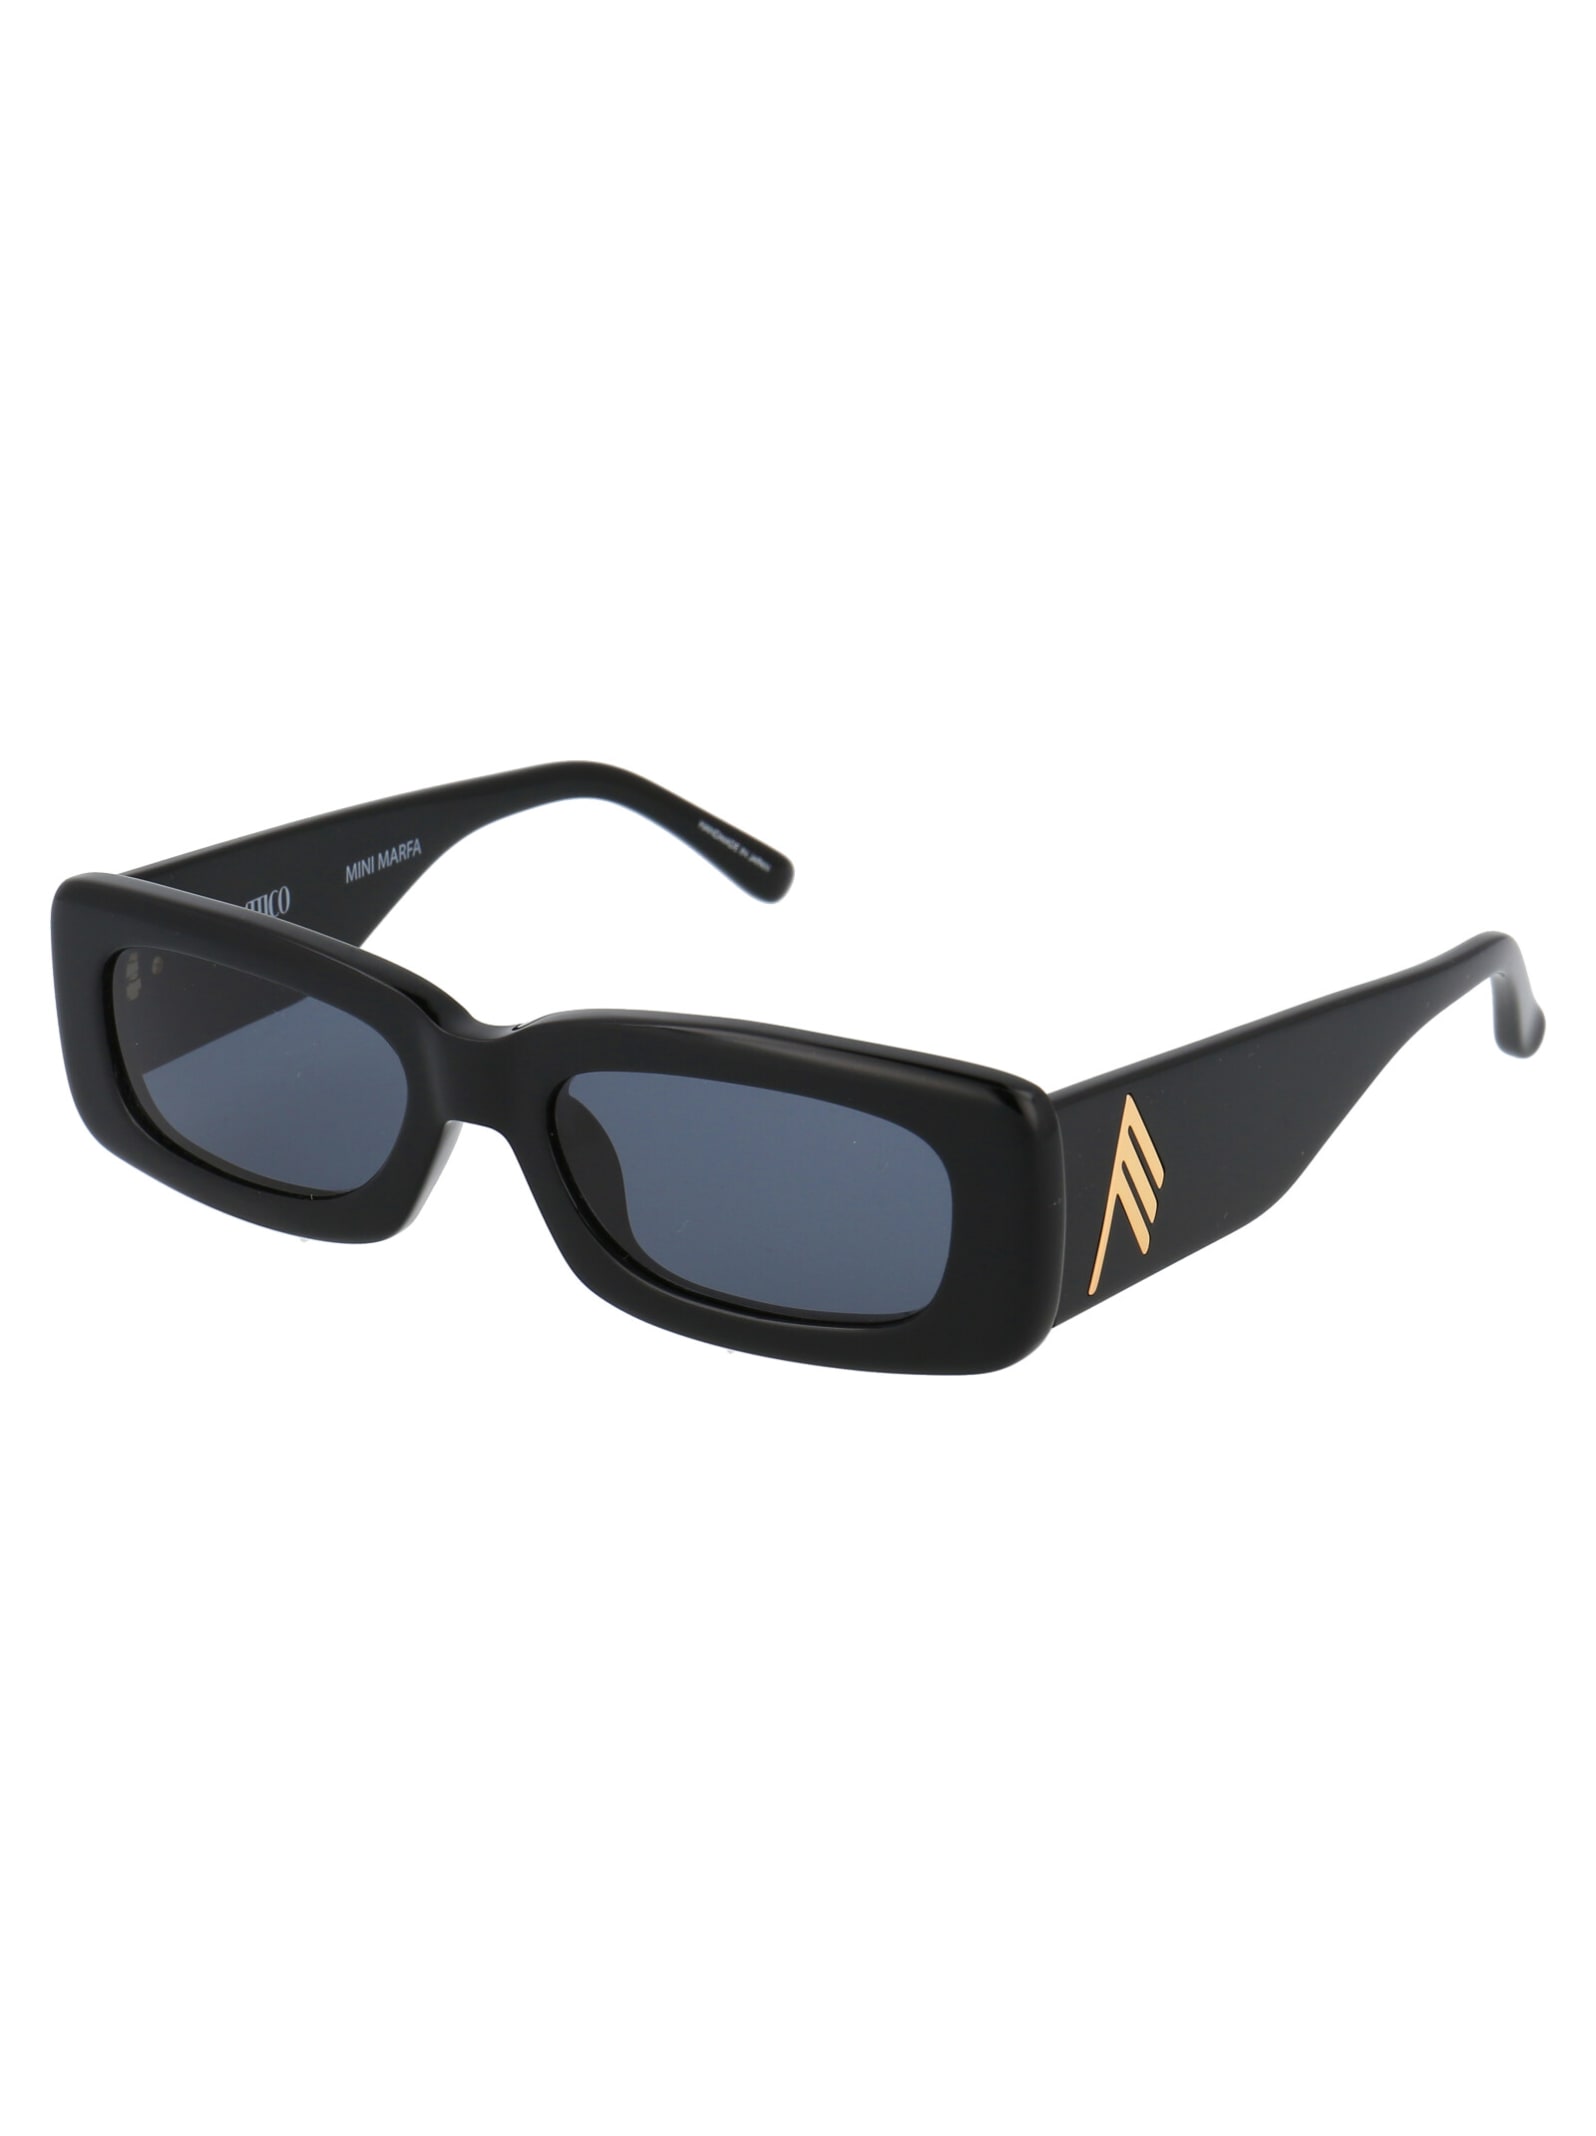 Shop Attico Mini Marfa Sunglasses In Black/yellowgold/grey